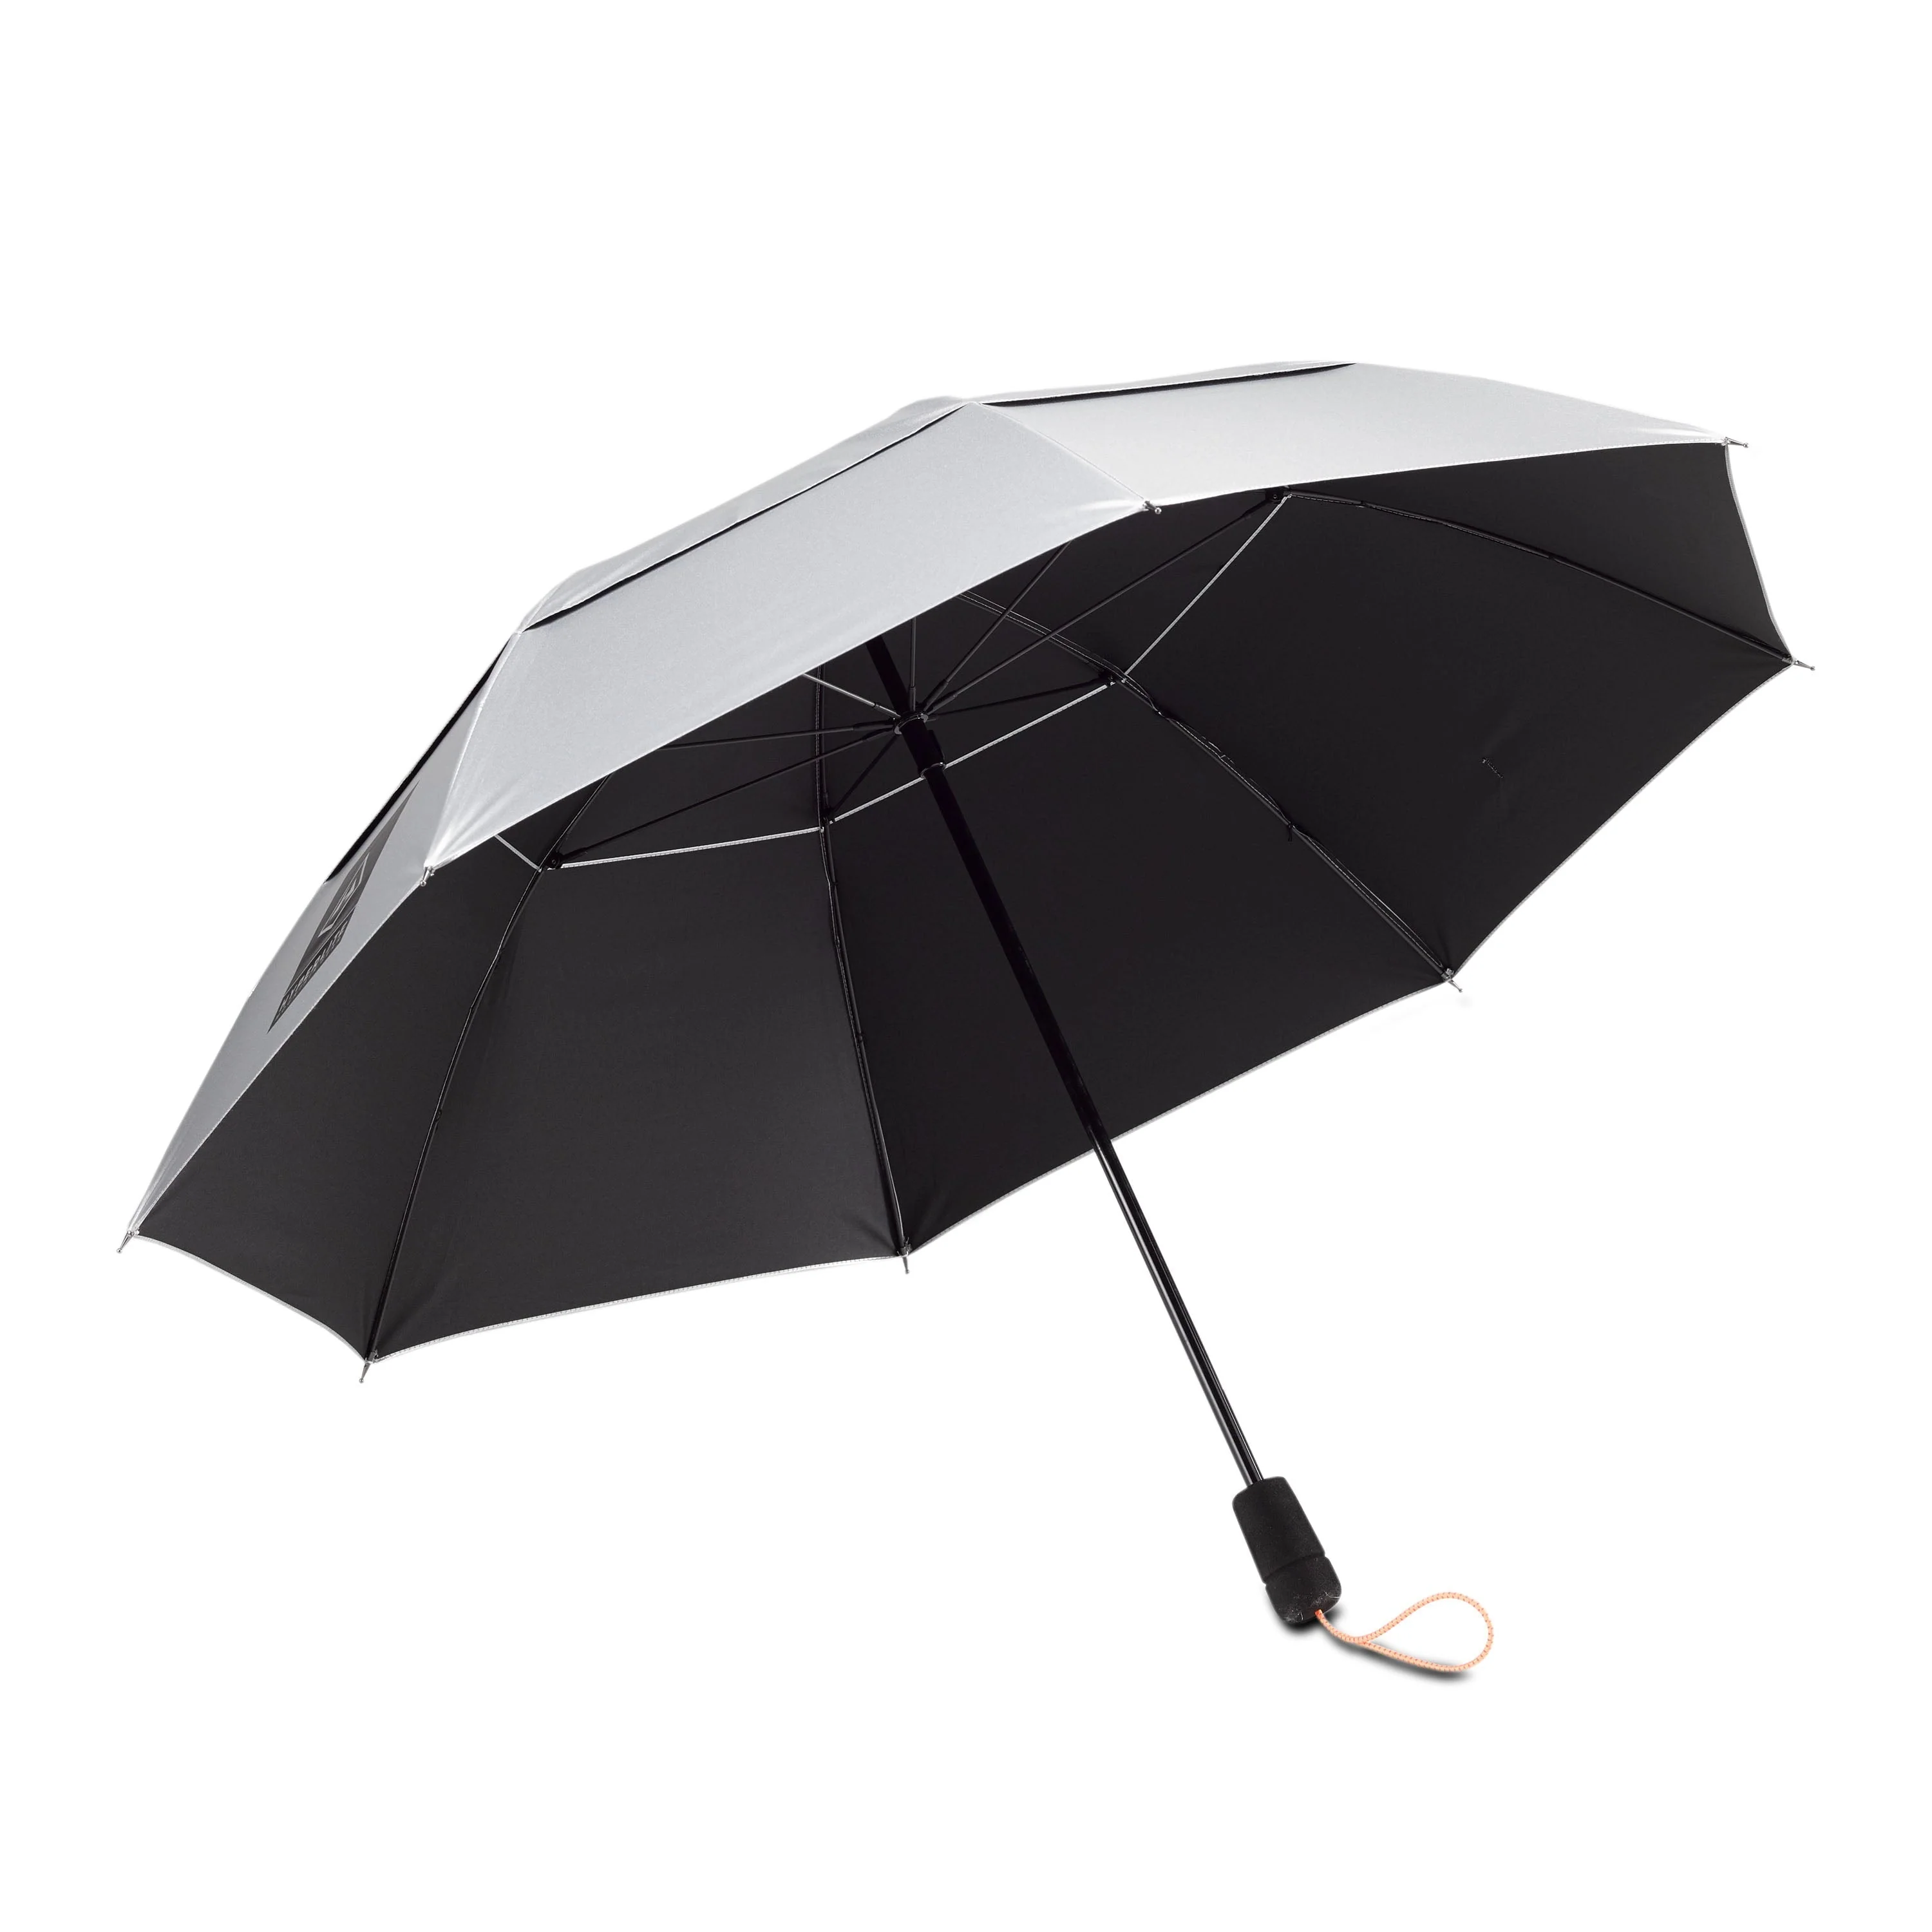 Essential Umbrella